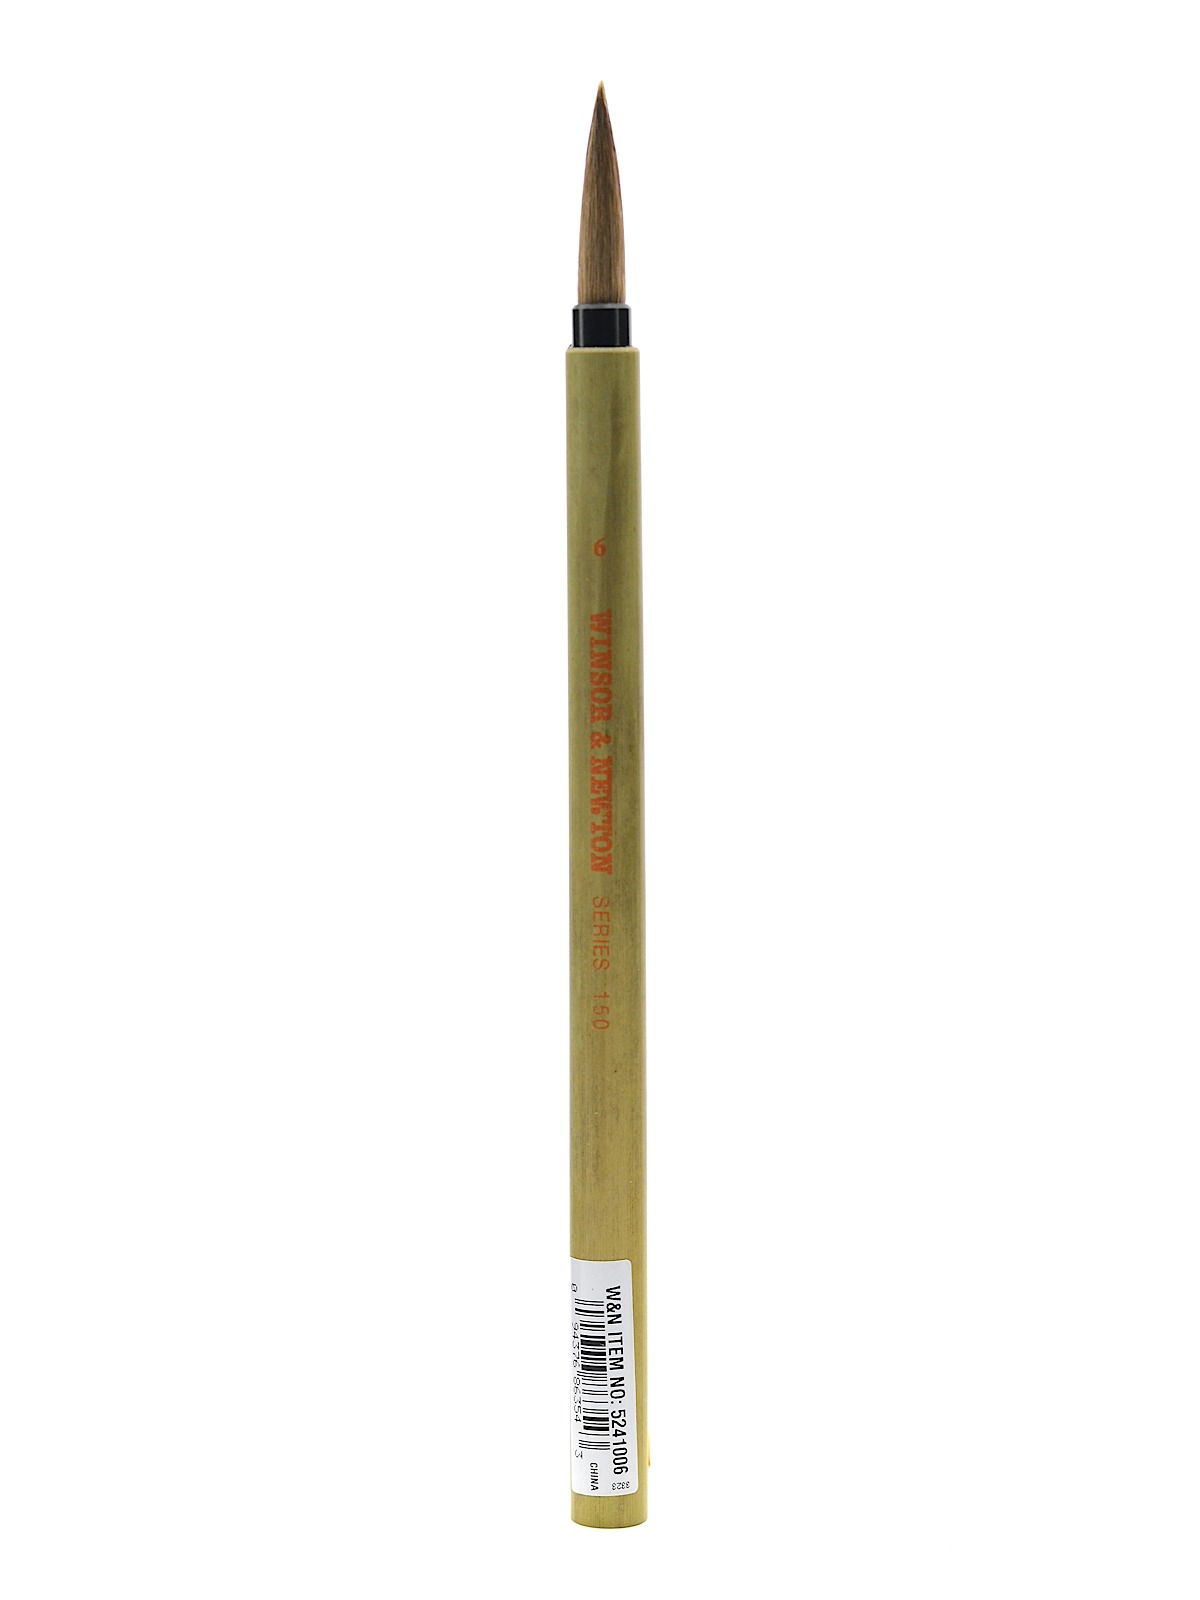 Series 150 Bamboo Brushes 6